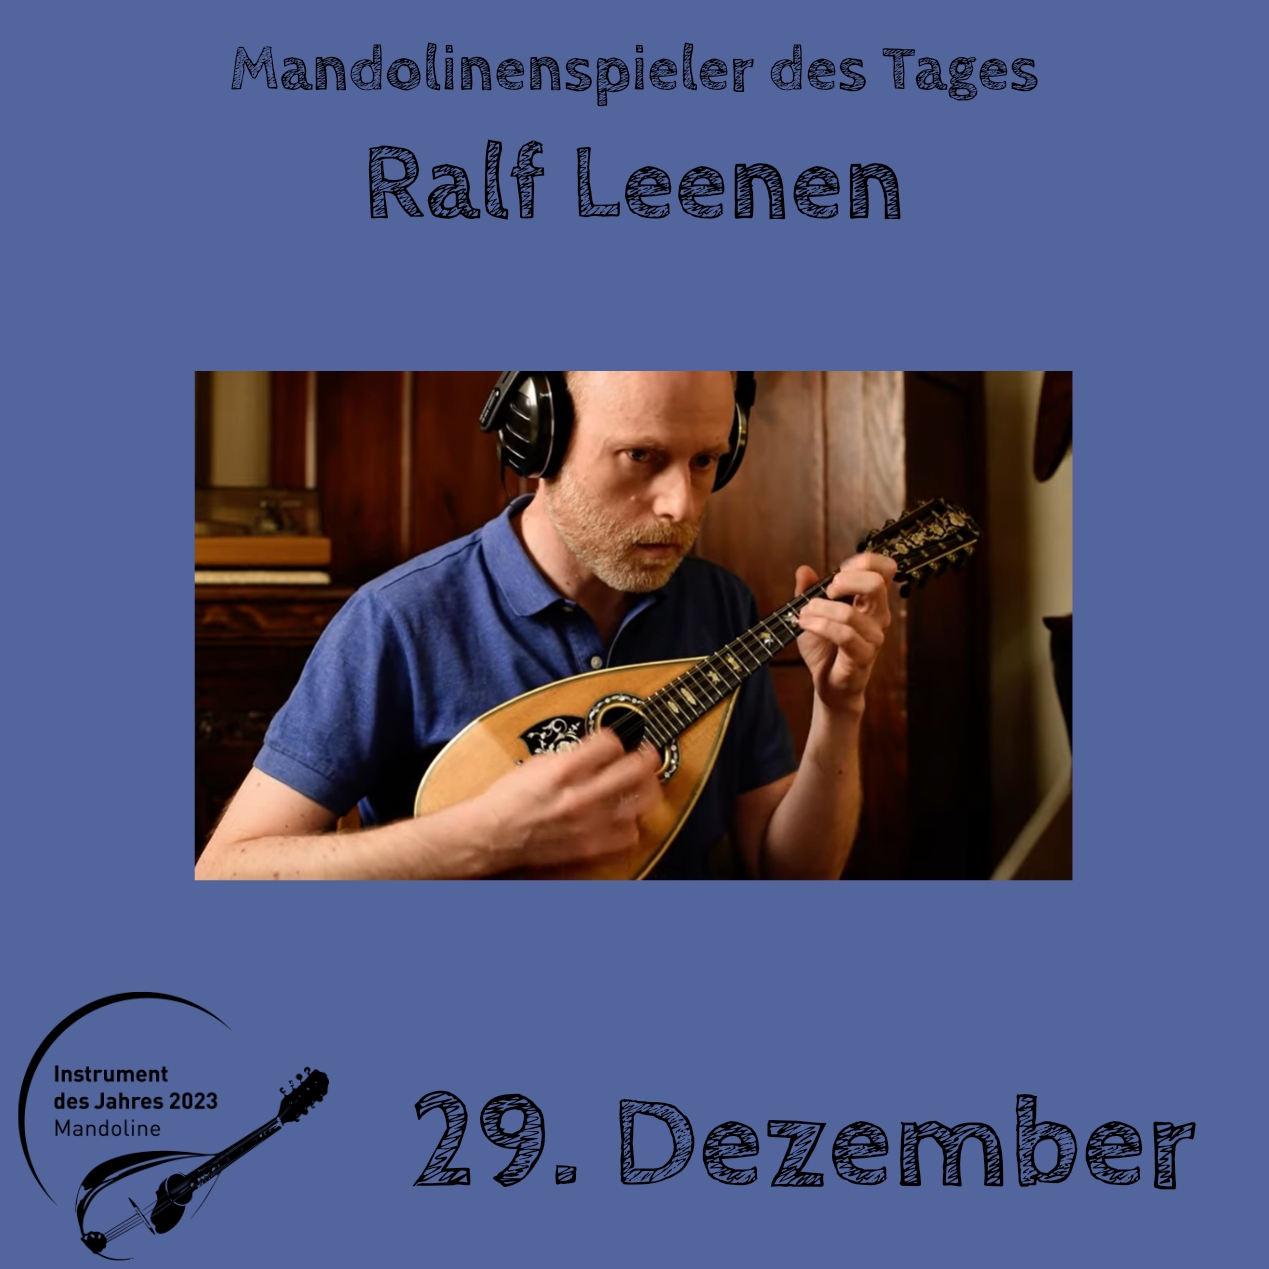 29. Dezember - Ralf Leenen Instrument des Jahres 2023 Mandolinenspieler Mandolinenspielerin des Tages